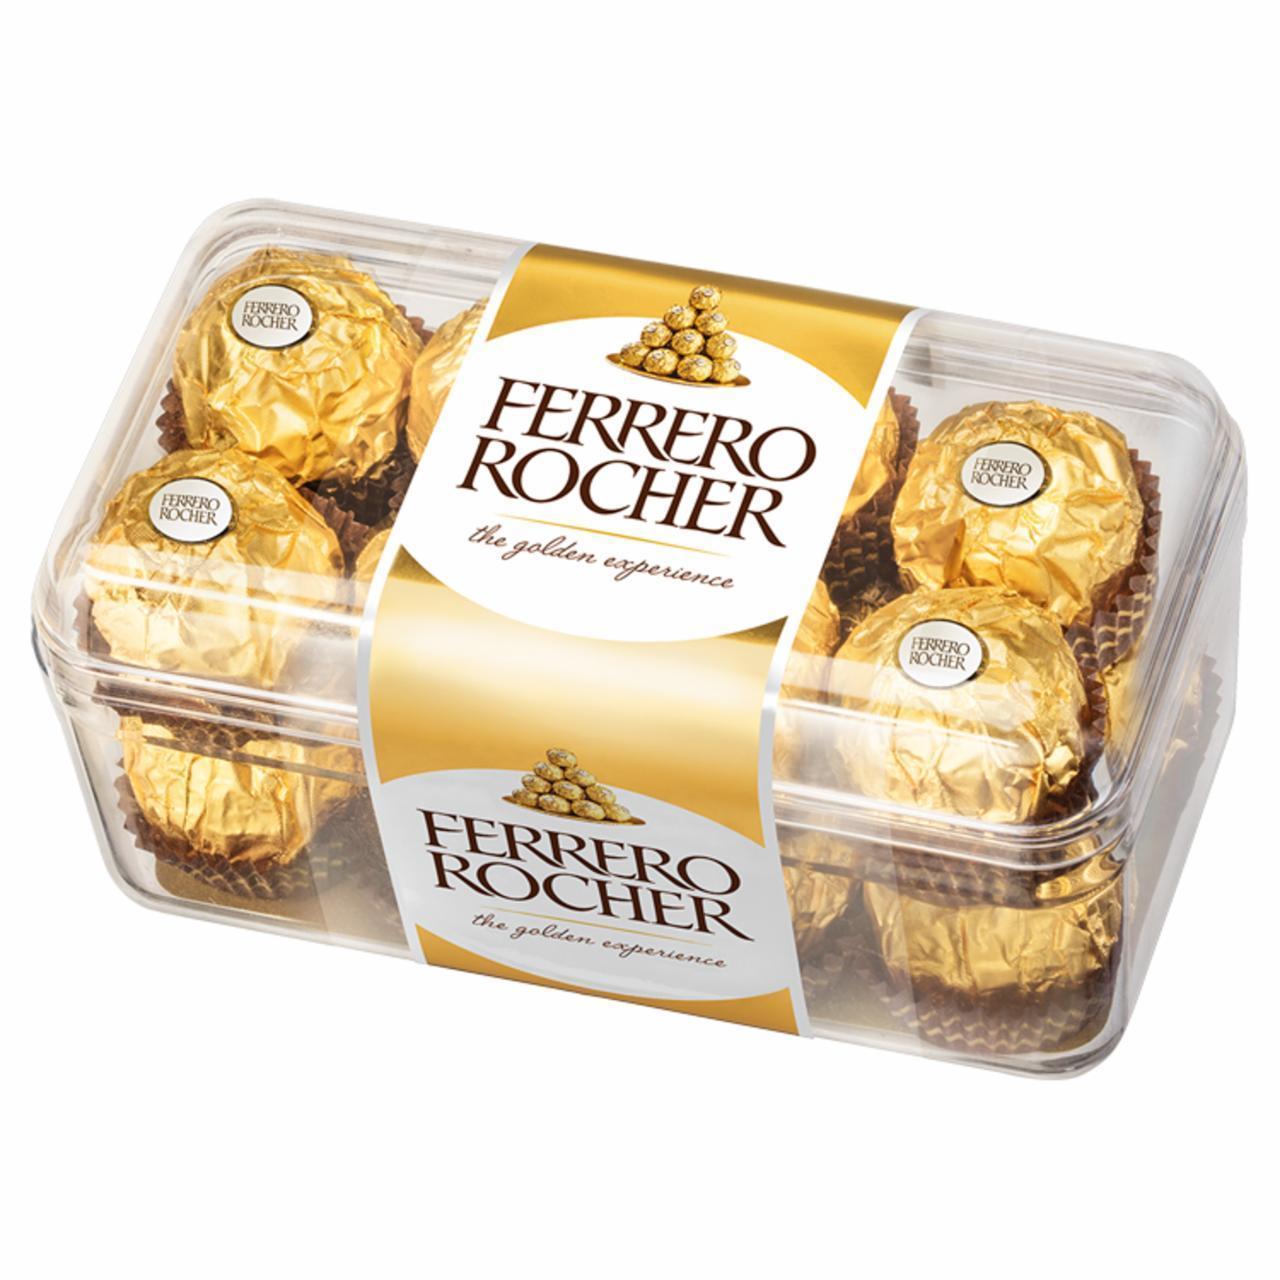 Képek - Ferrero Rocher